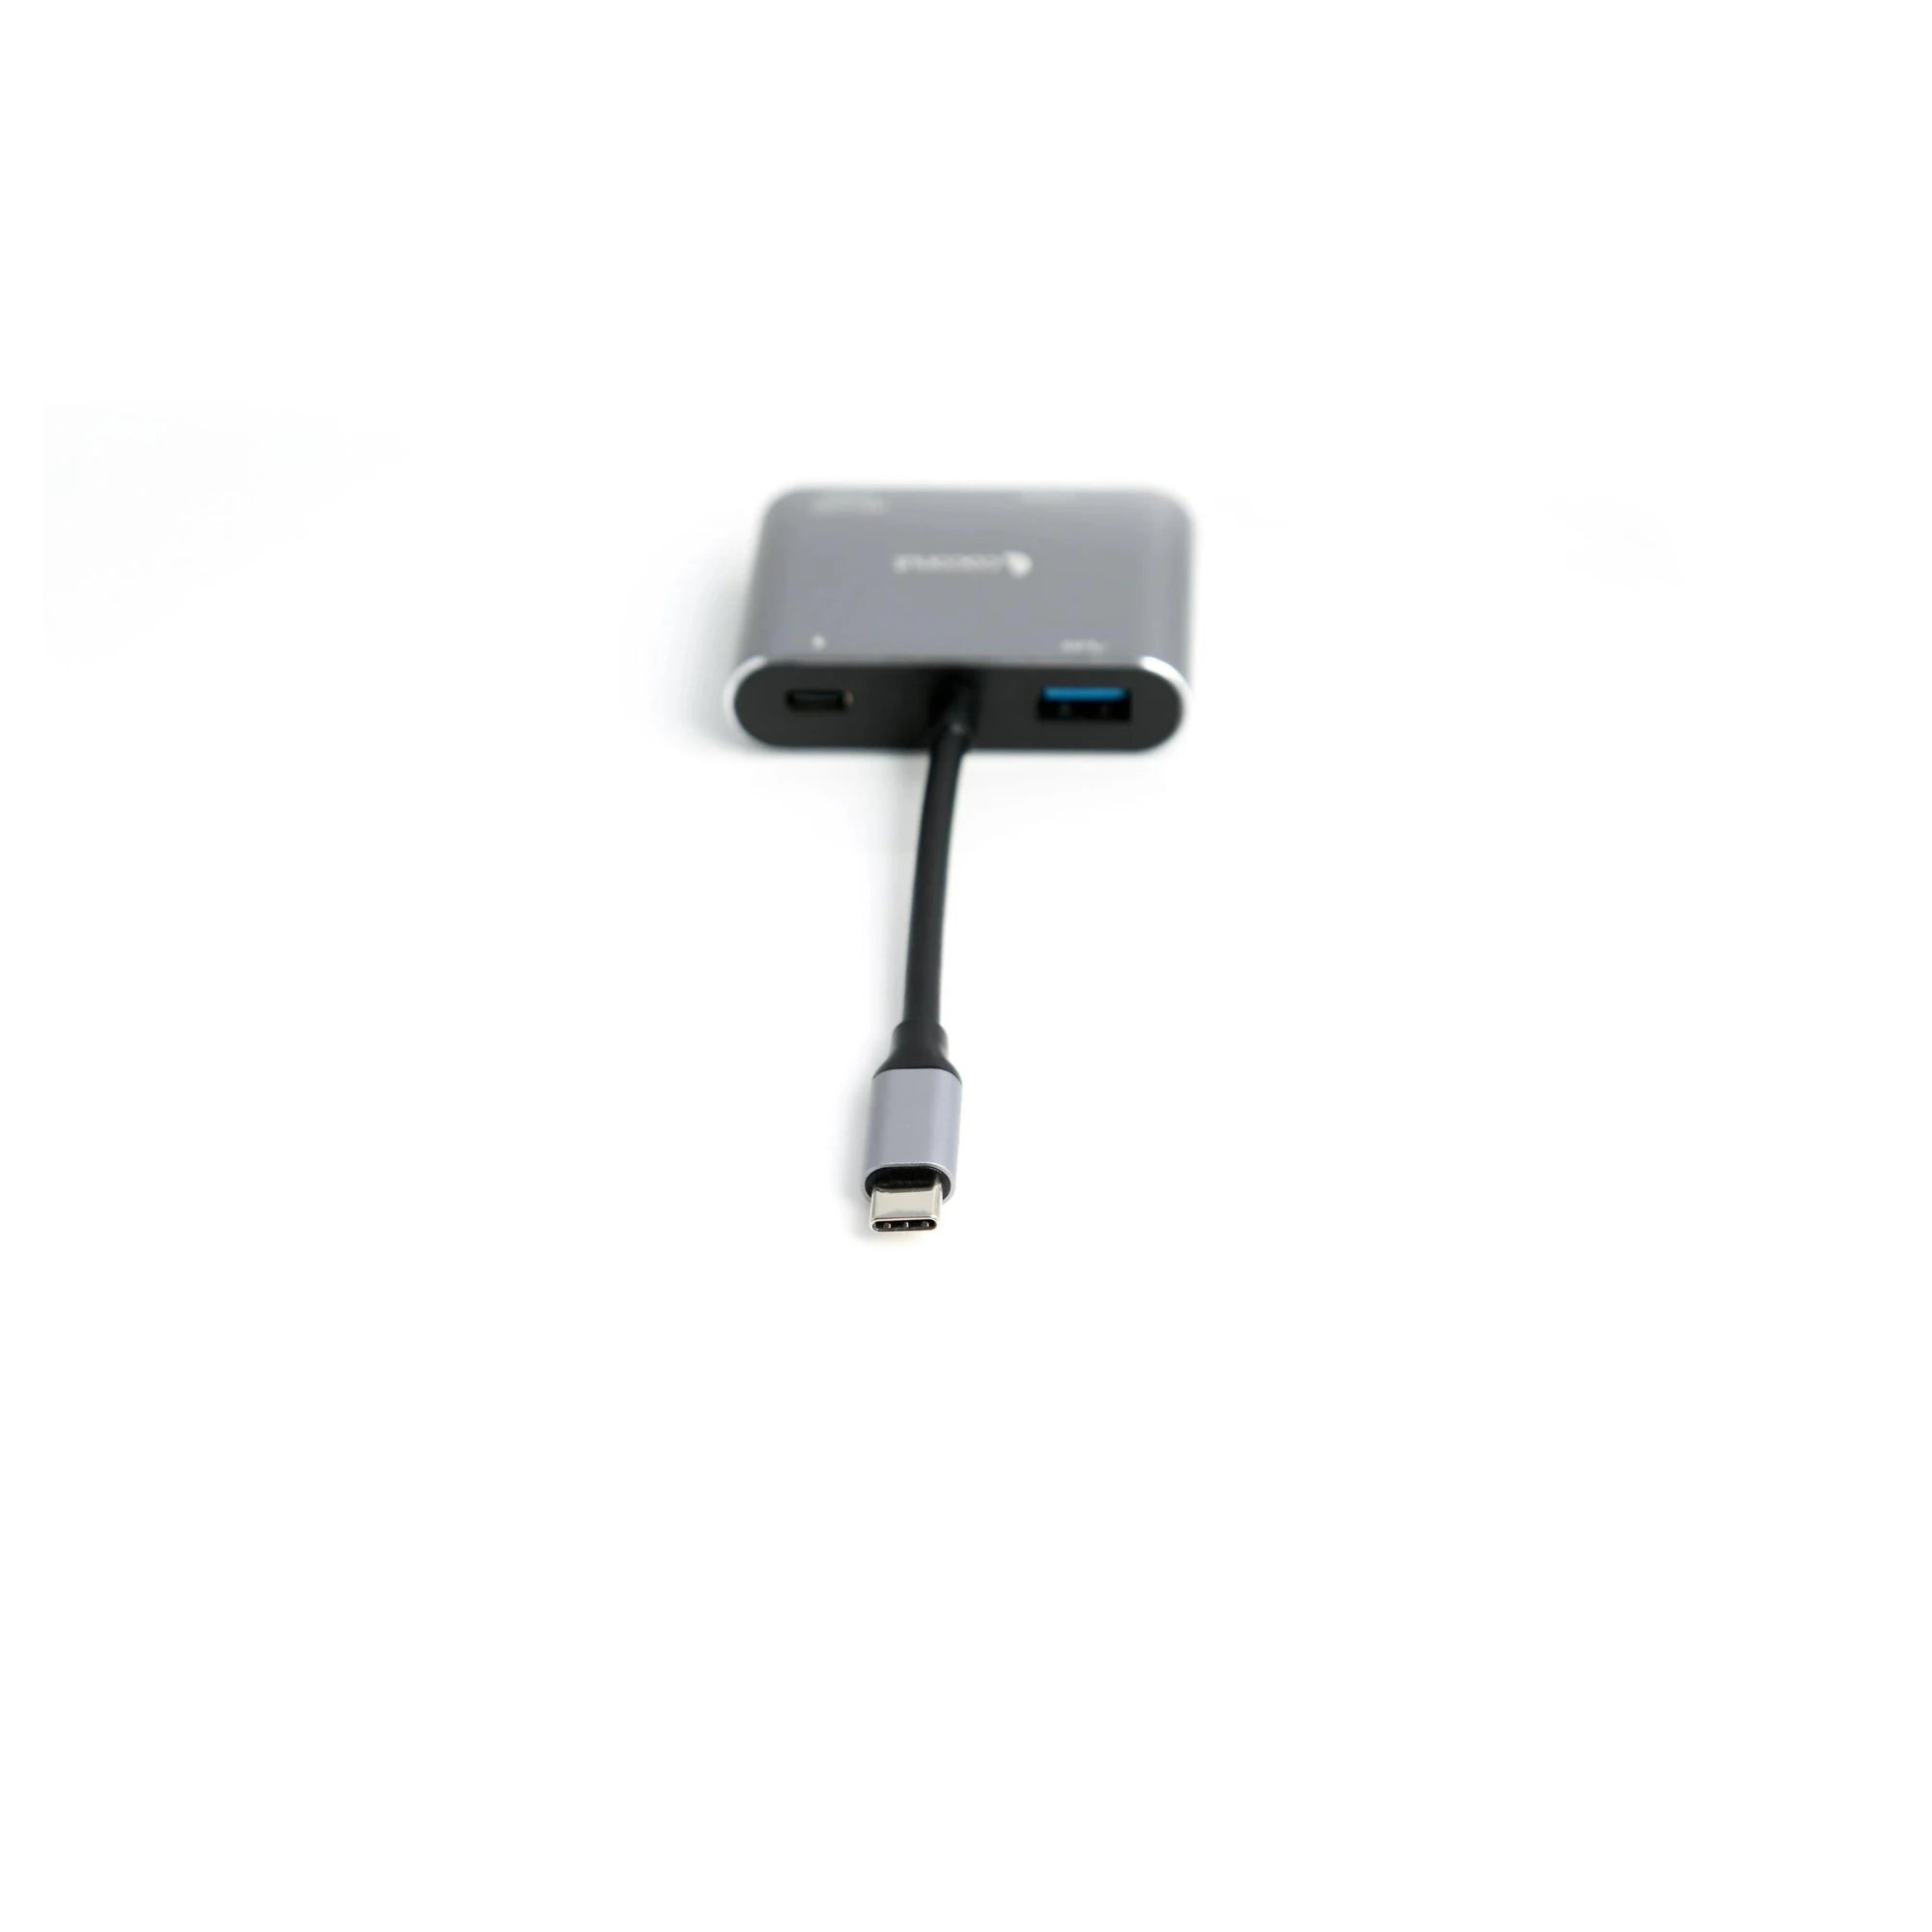 USB C to 4 in 1 HUB - 4K HDMI, VGA, Type C, USB 3.0